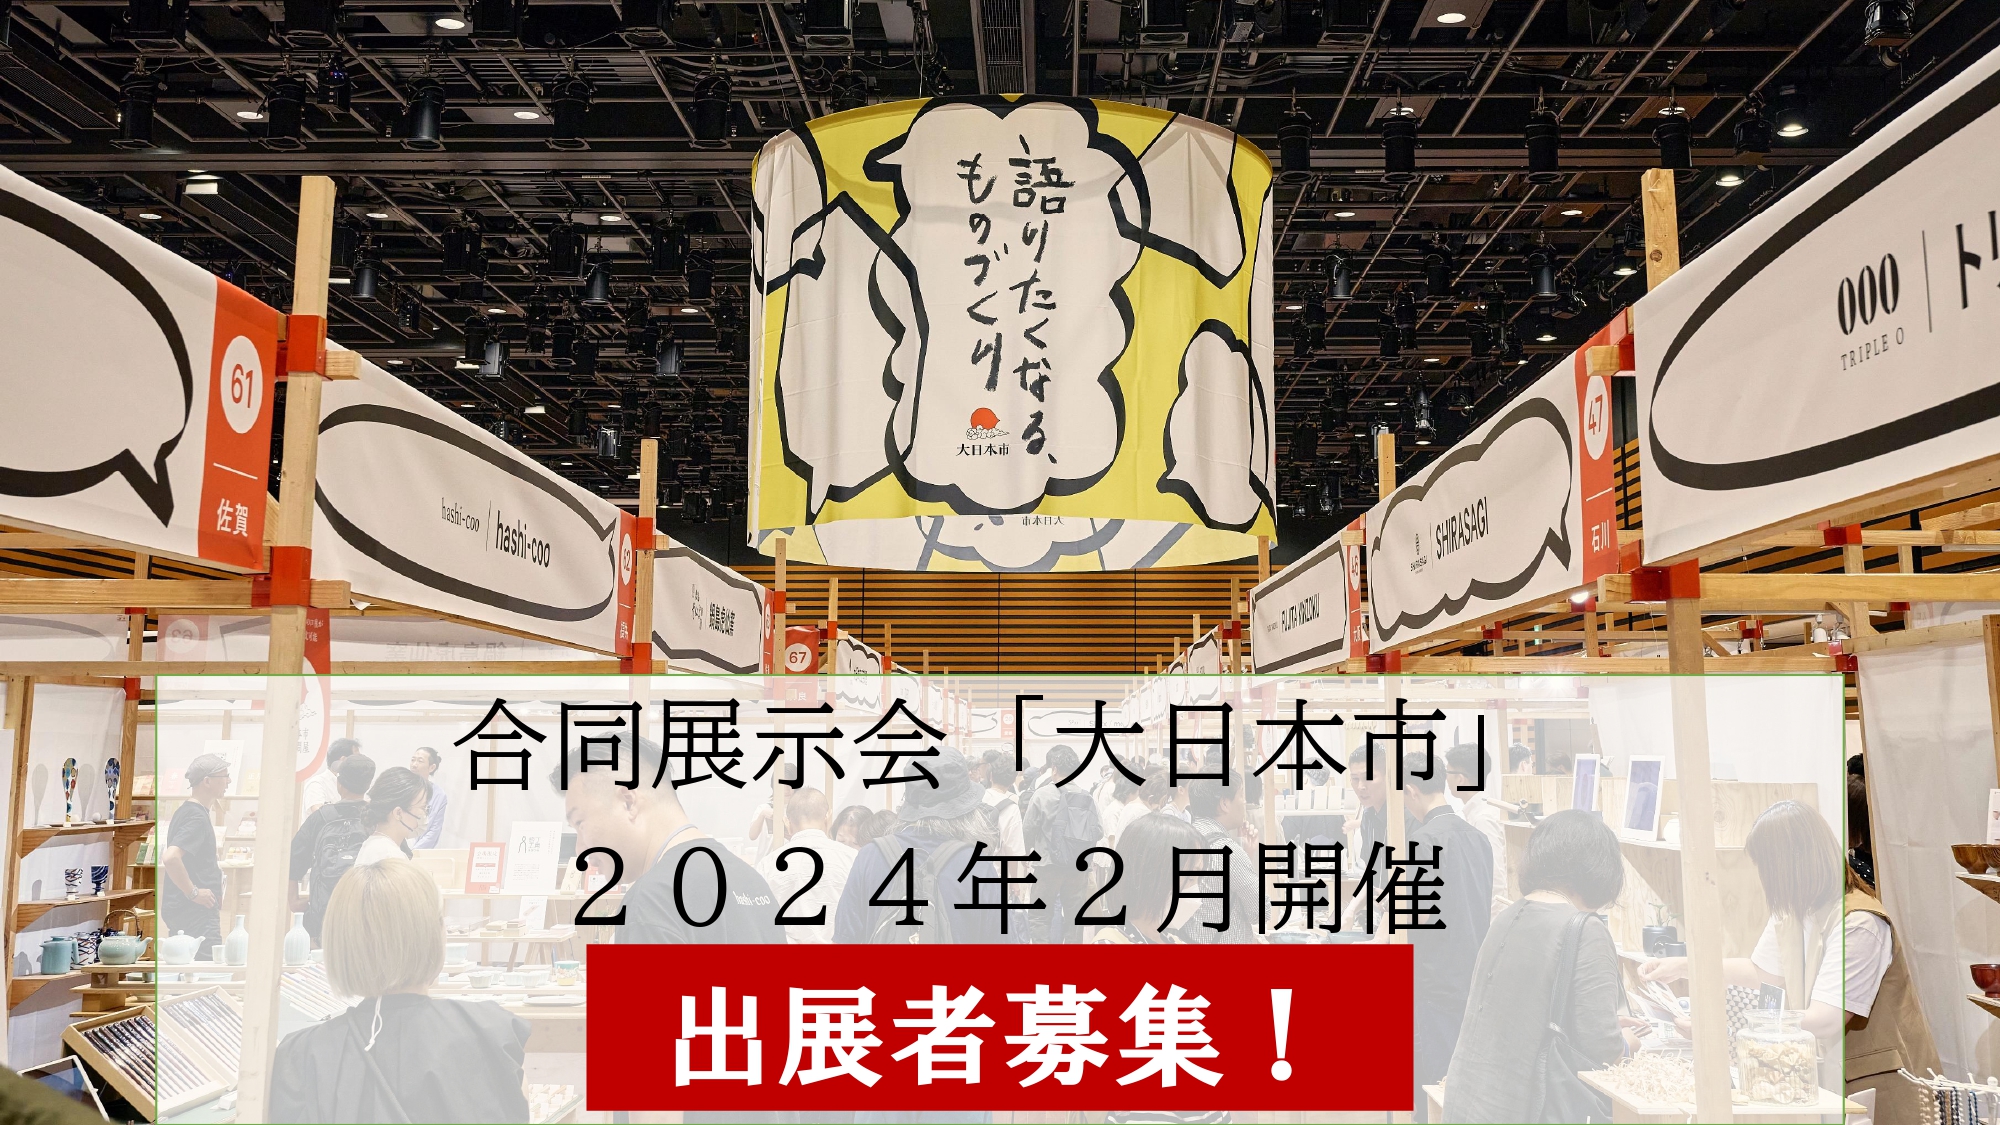 大日本市WEB│出展者募集!合同展示会「大日本市」2024年2月開催